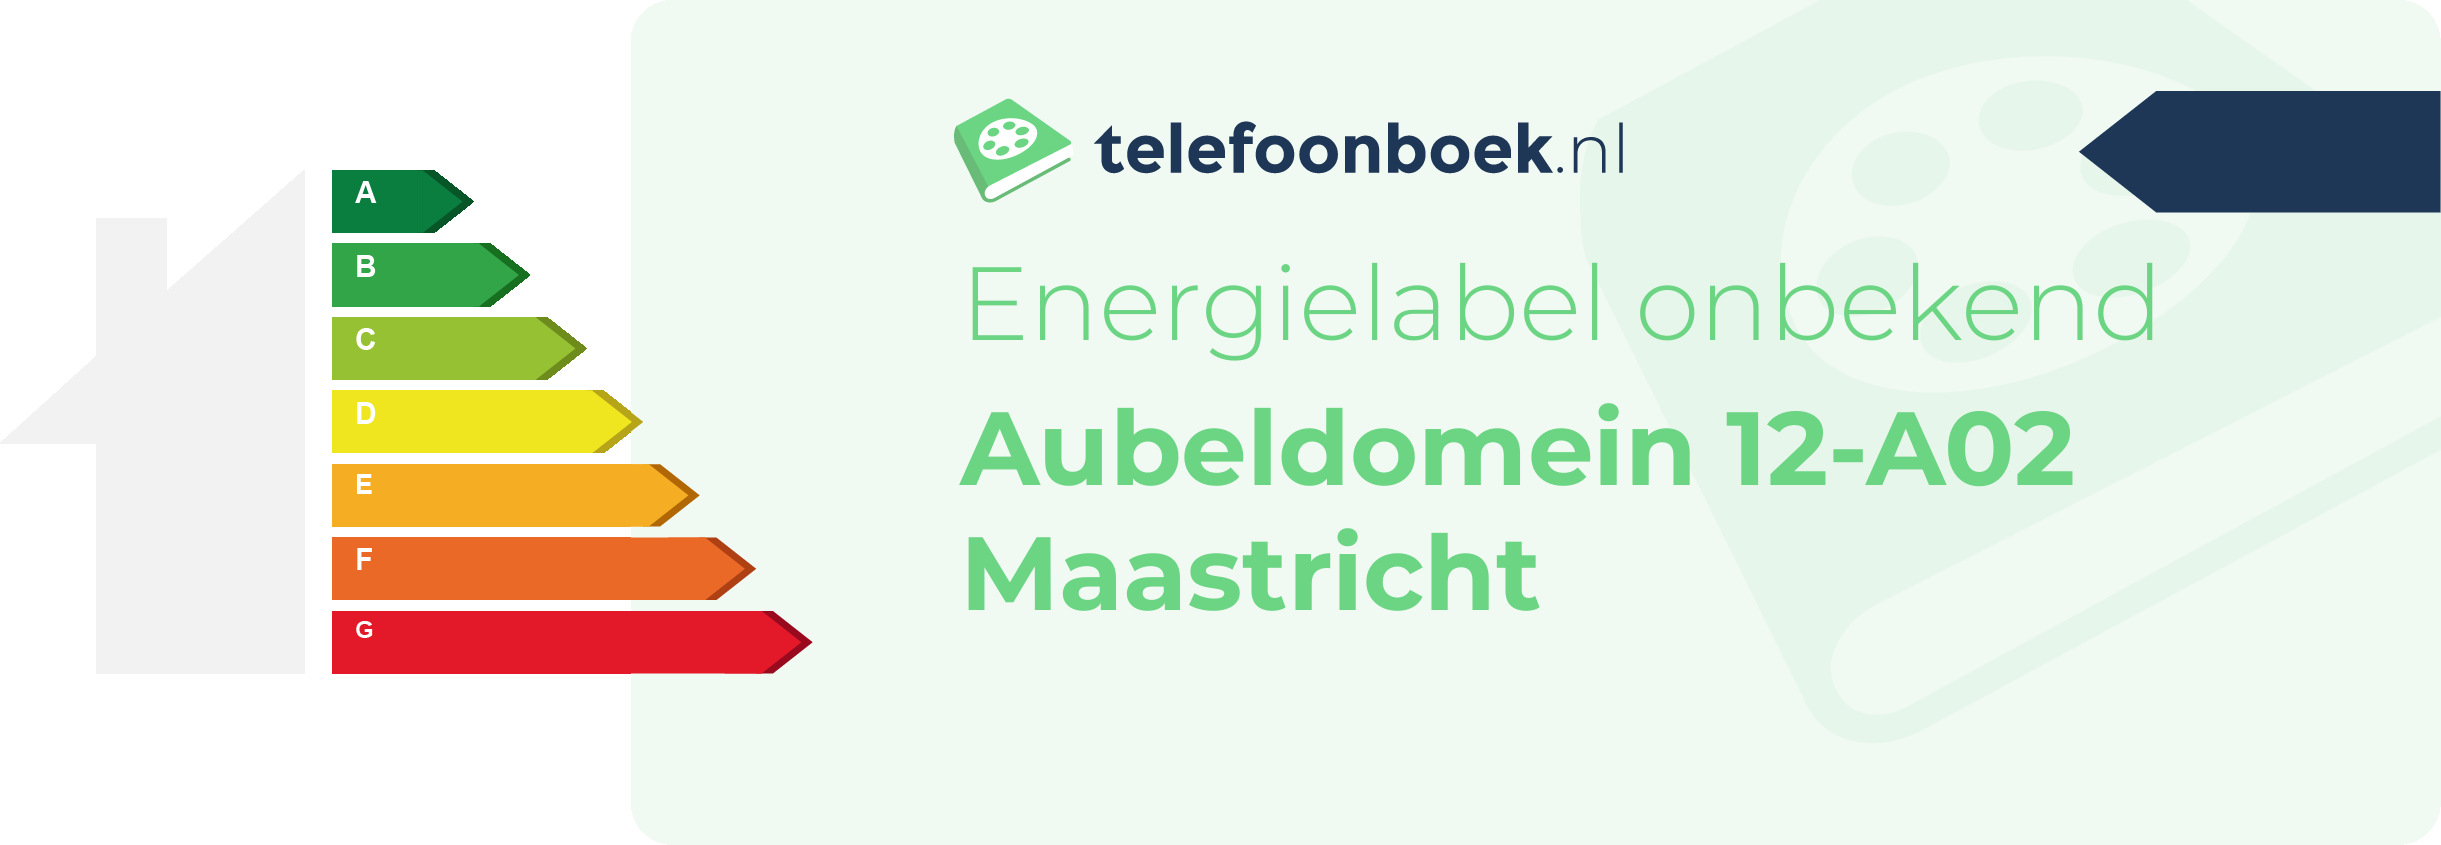 Energielabel Aubeldomein 12-A02 Maastricht